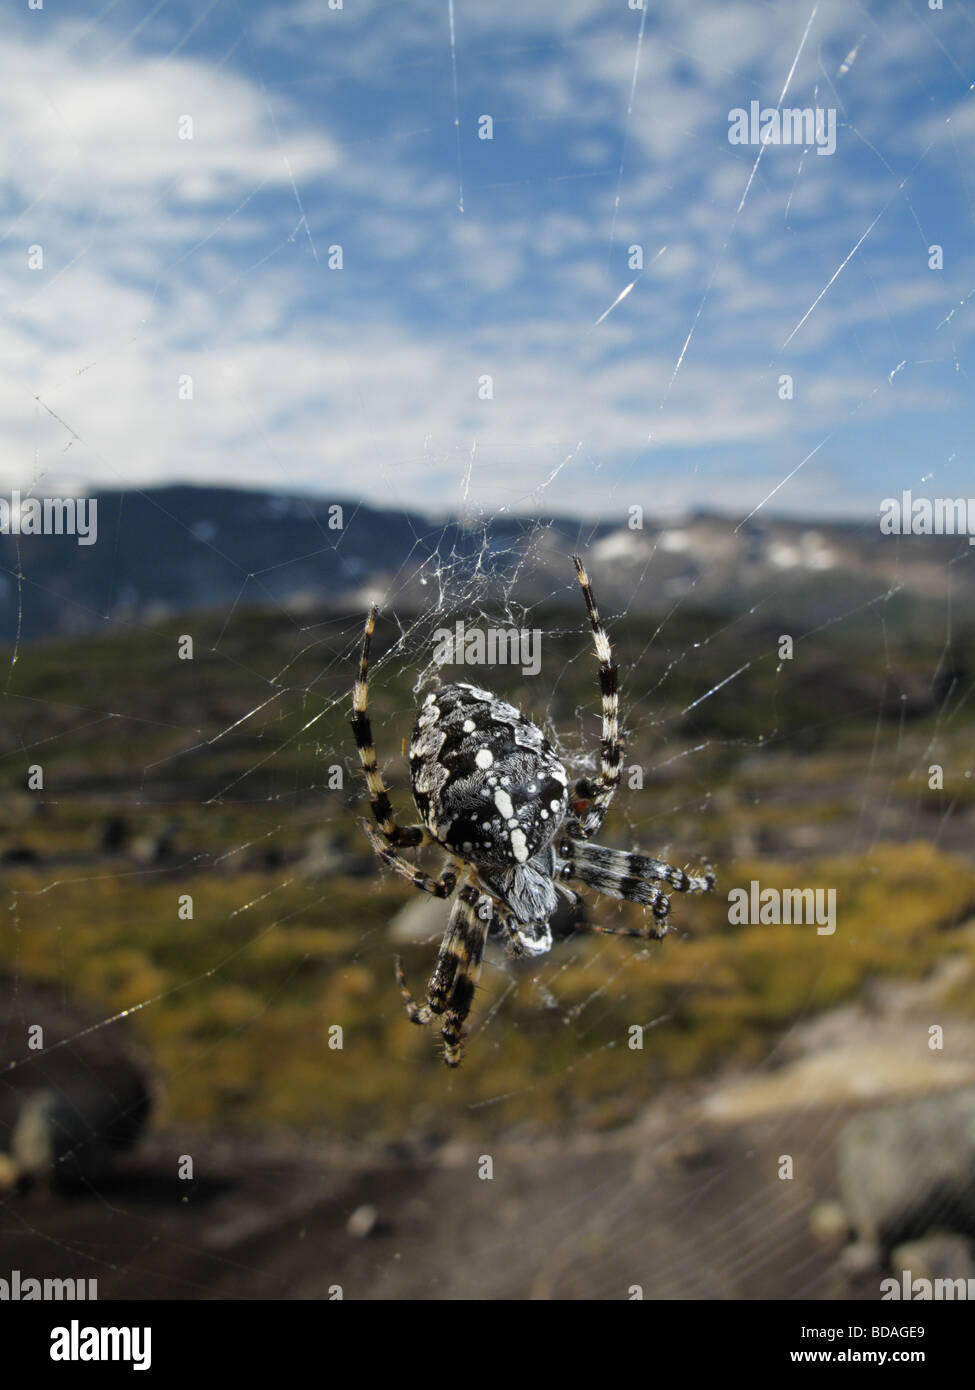 Giardino europeo crociera cardanica o spider (araneus diadematus) in Norvegia. highlands può essere visto in background. Foto Stock